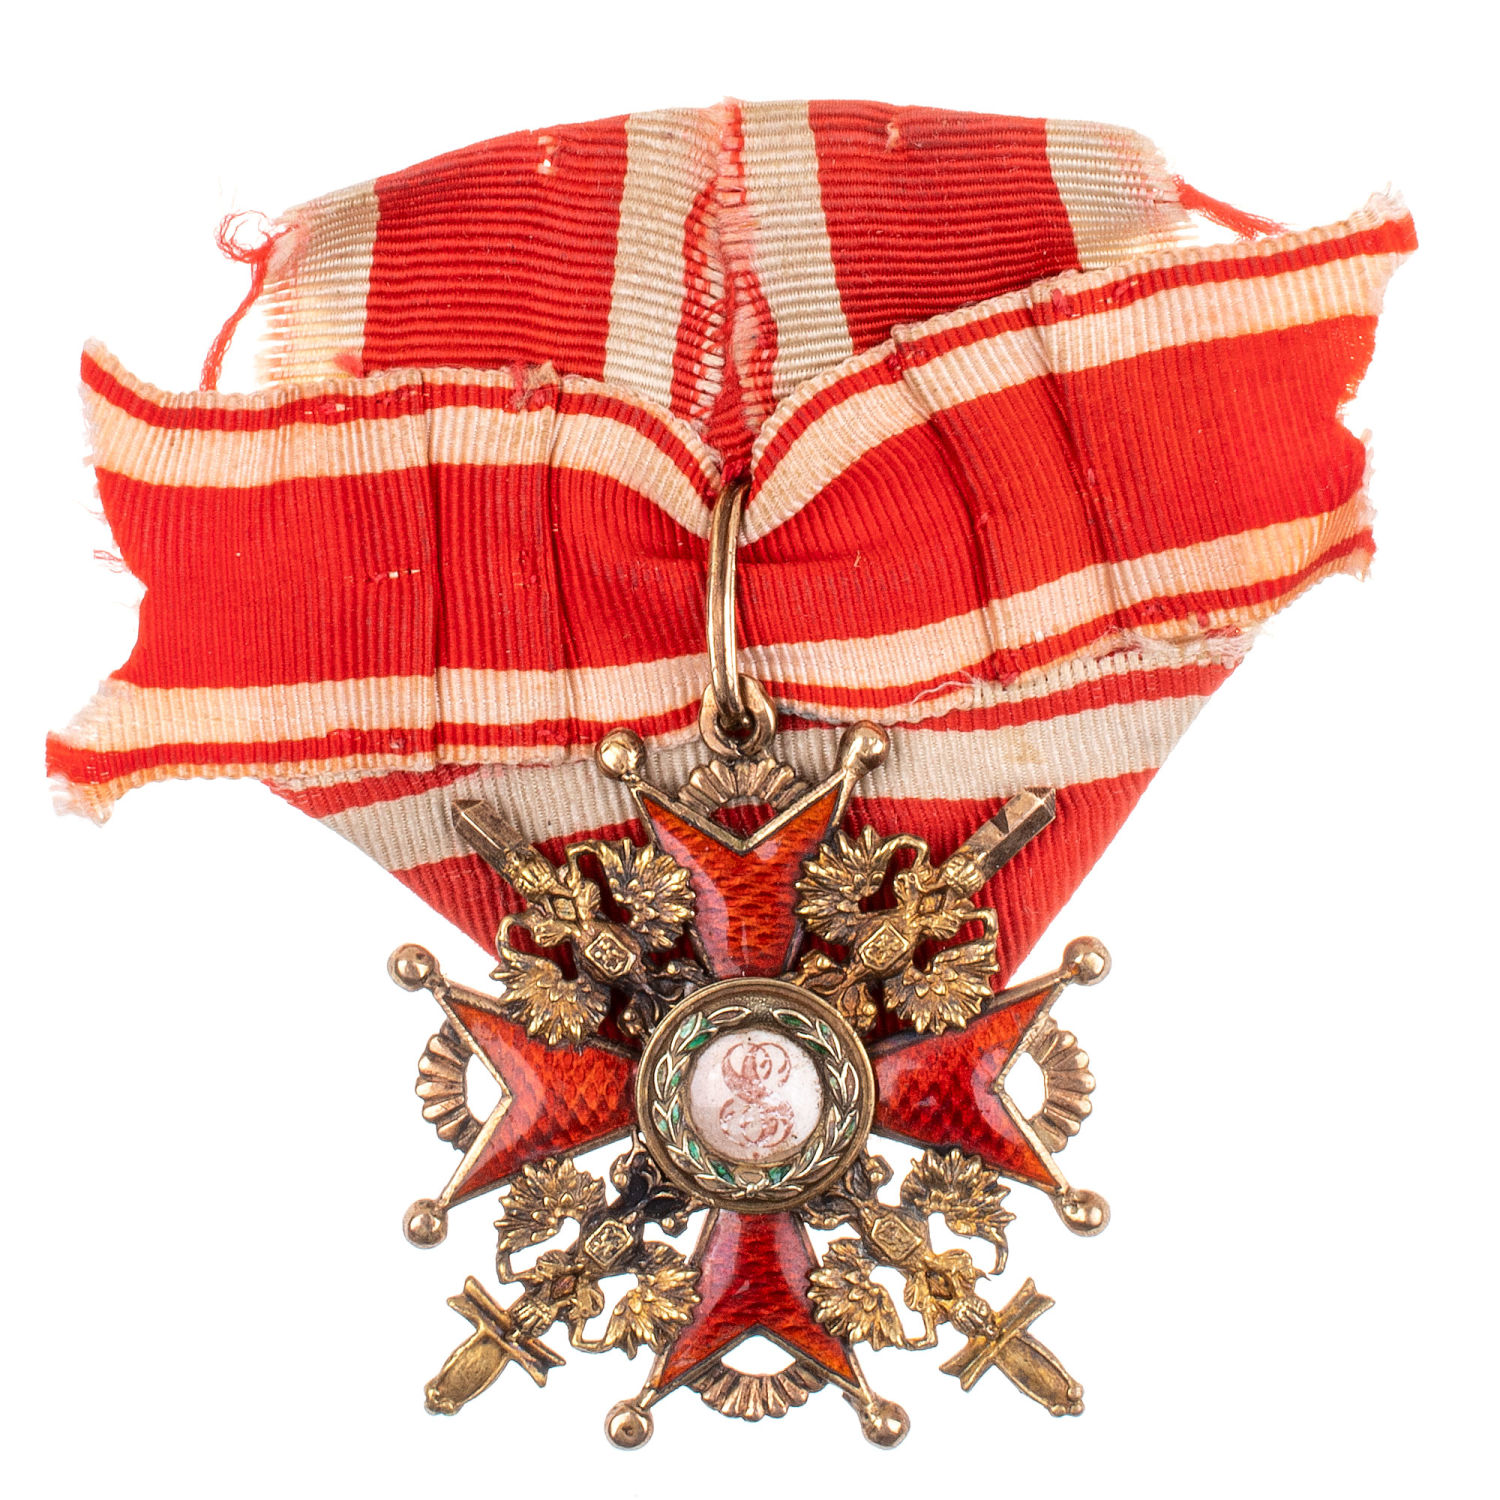 Знак ордена Св. Станислава 3 - й ст с мечами на ленте (1911 - 1916 гг). "Эдуард" - "ВД".